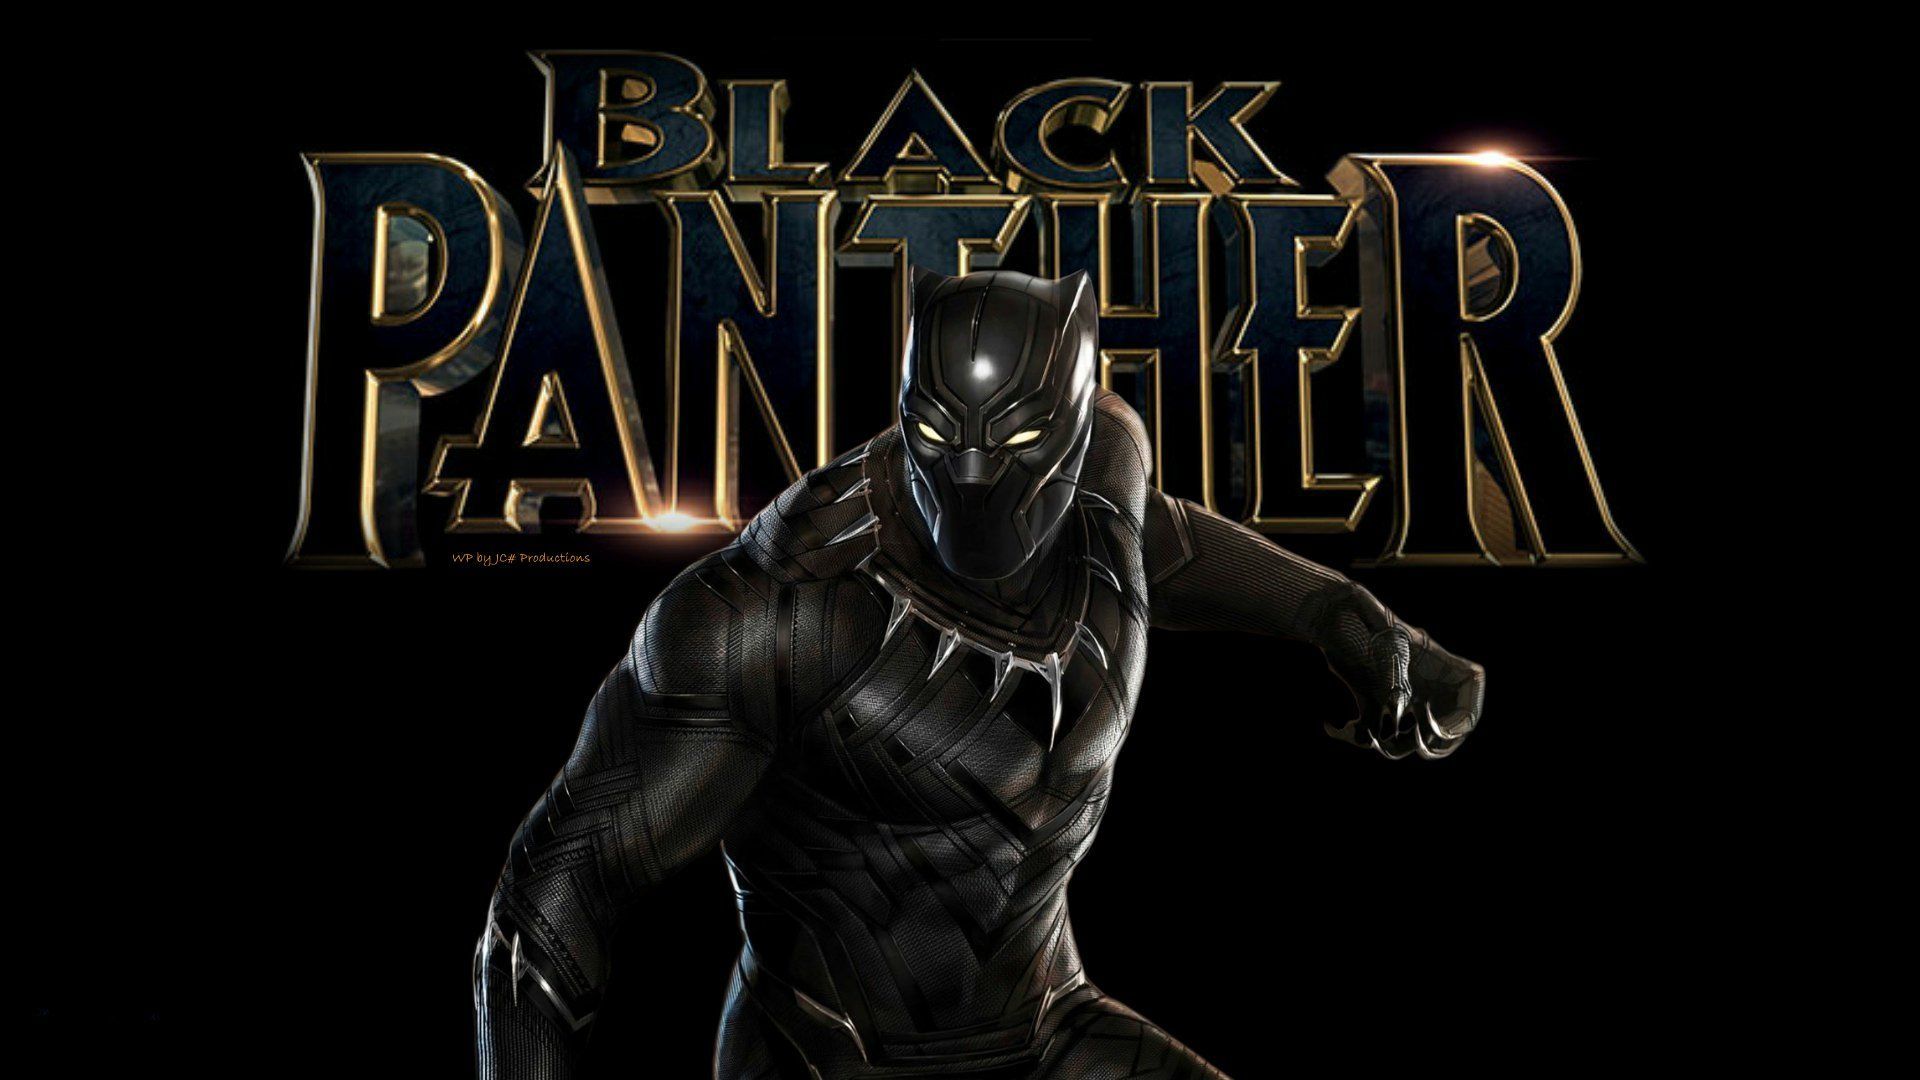 Black Panther Movie Wallpaper Free Black Panther Movie